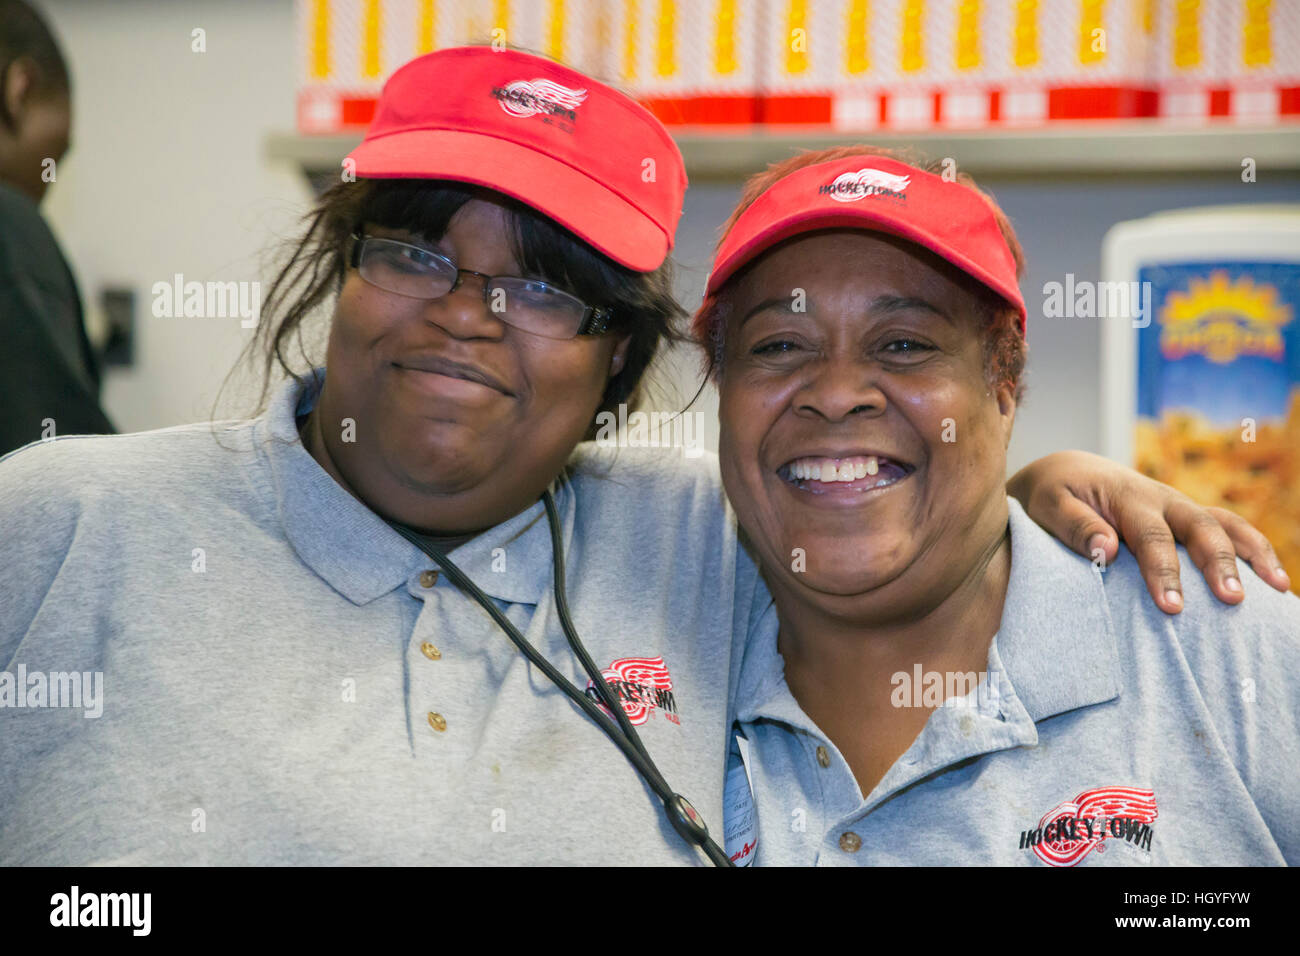 Detroit, Michigan - due lavoratori che posano per una foto in un ristorante fast food all'interno di Joe Louis Arena. Foto Stock